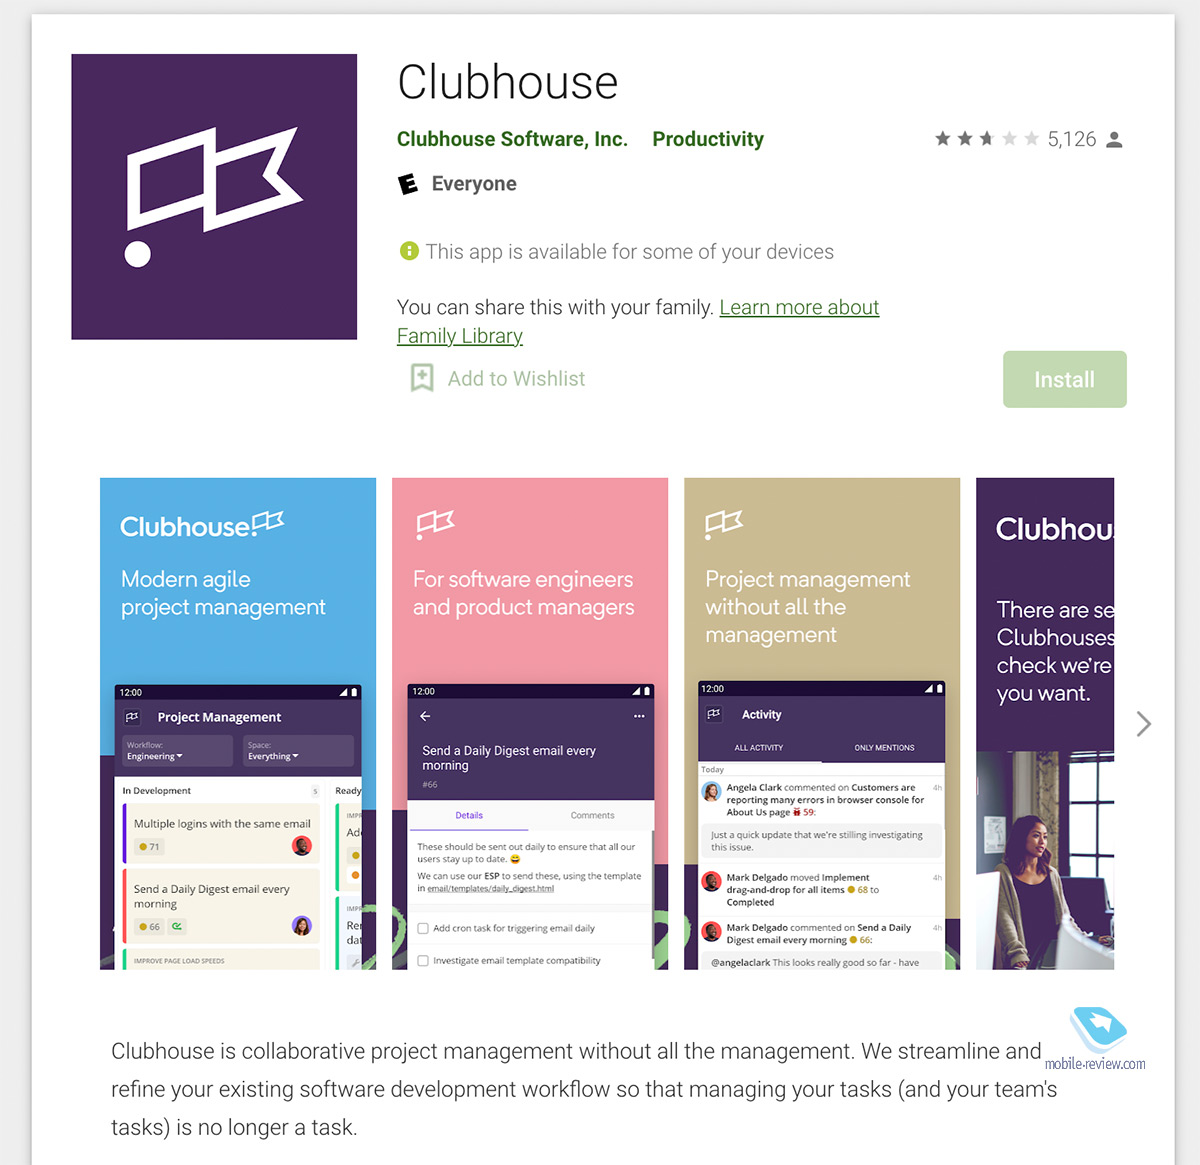 Соцсеть Clubhouse – как она работает и кому она интересна